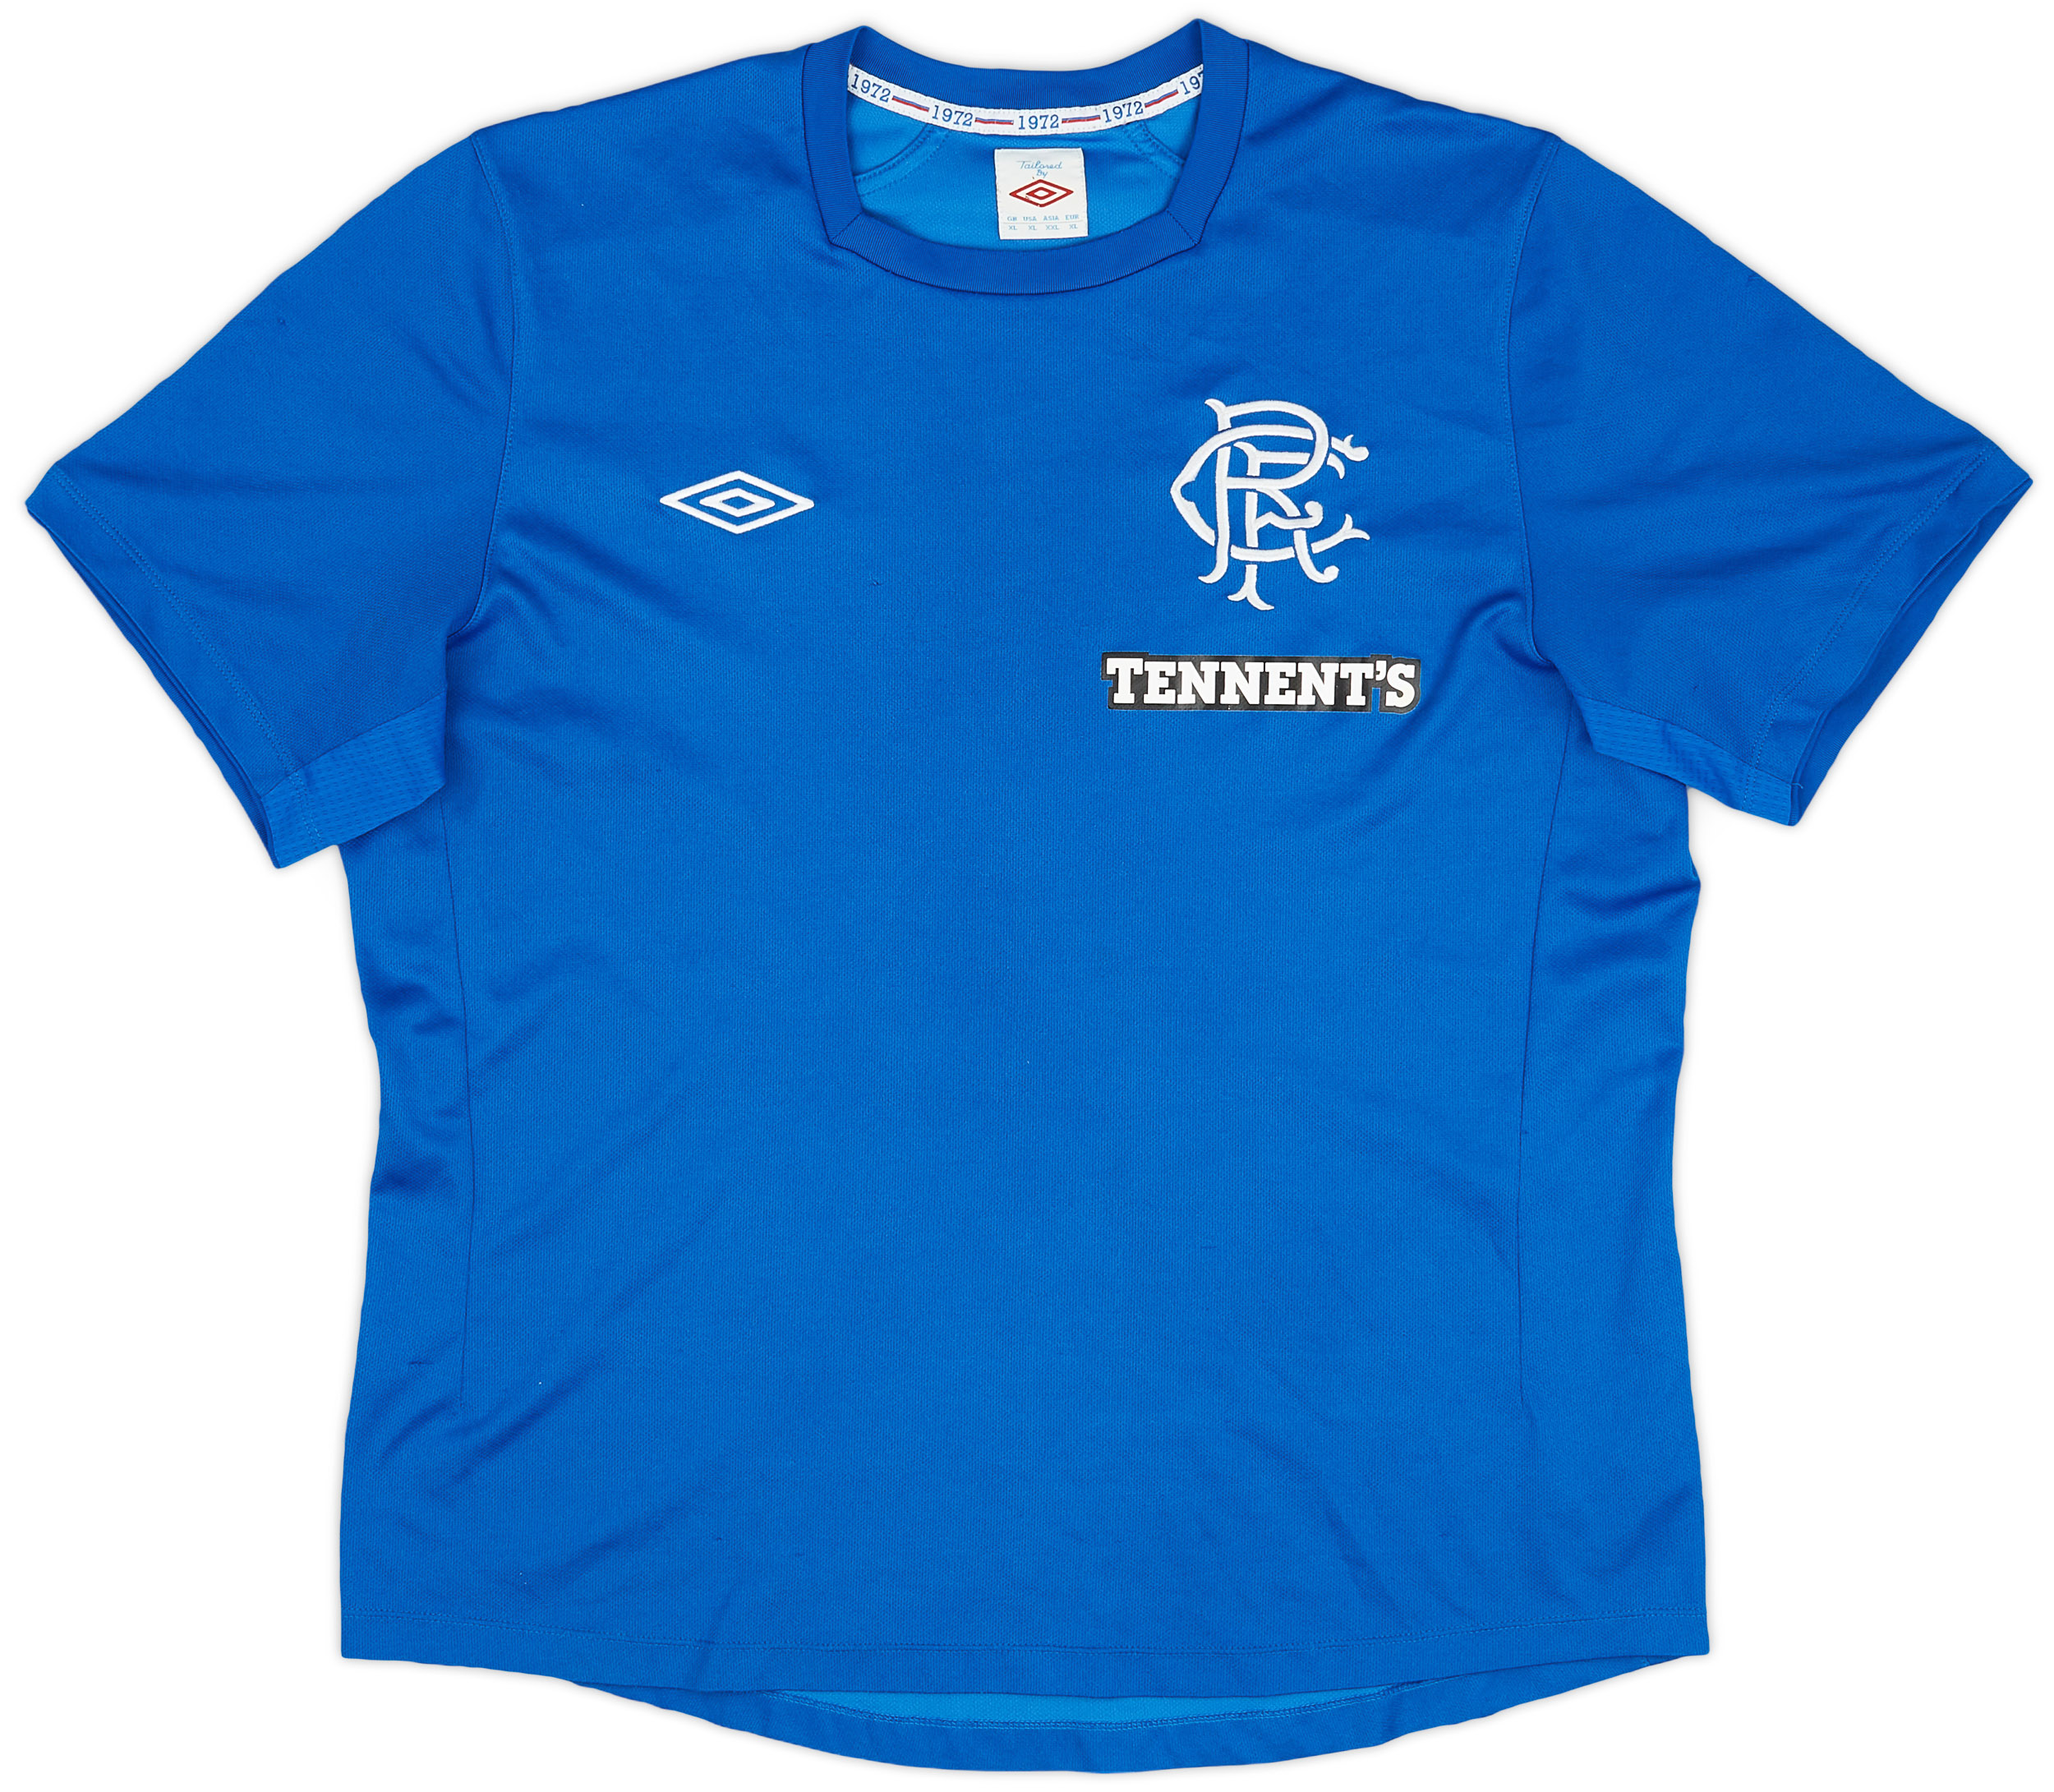 2012-13 Rangers Home Shirt - 8/10 - ()